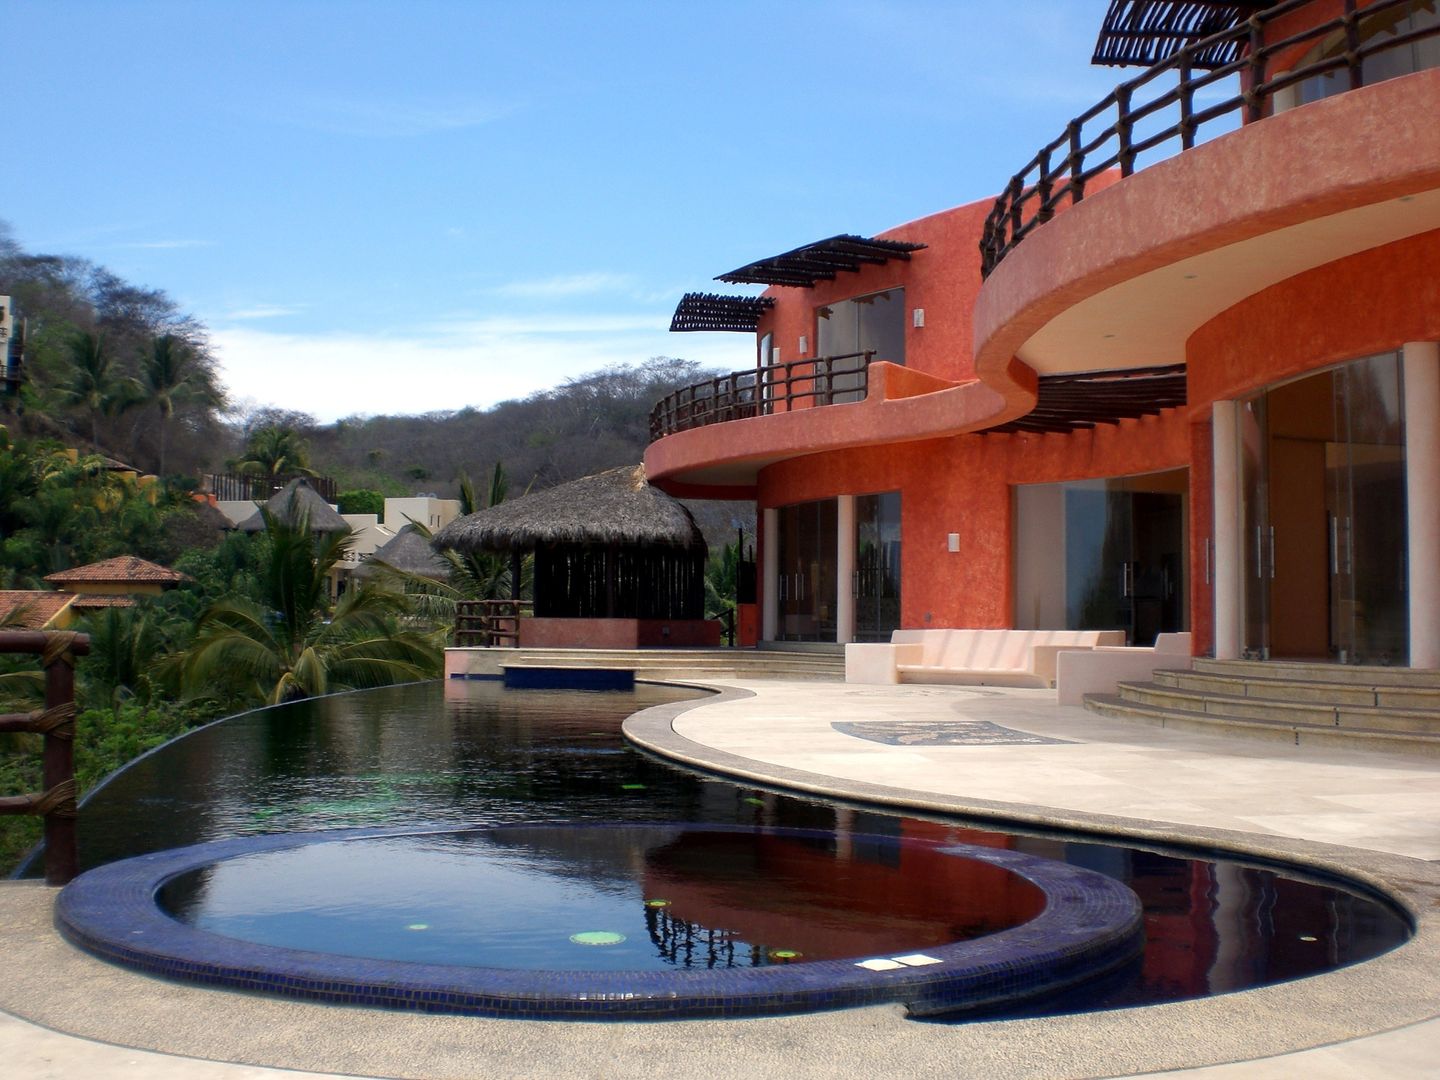 Mariposa House, arqflores / architect arqflores / architect สระว่ายน้ำ